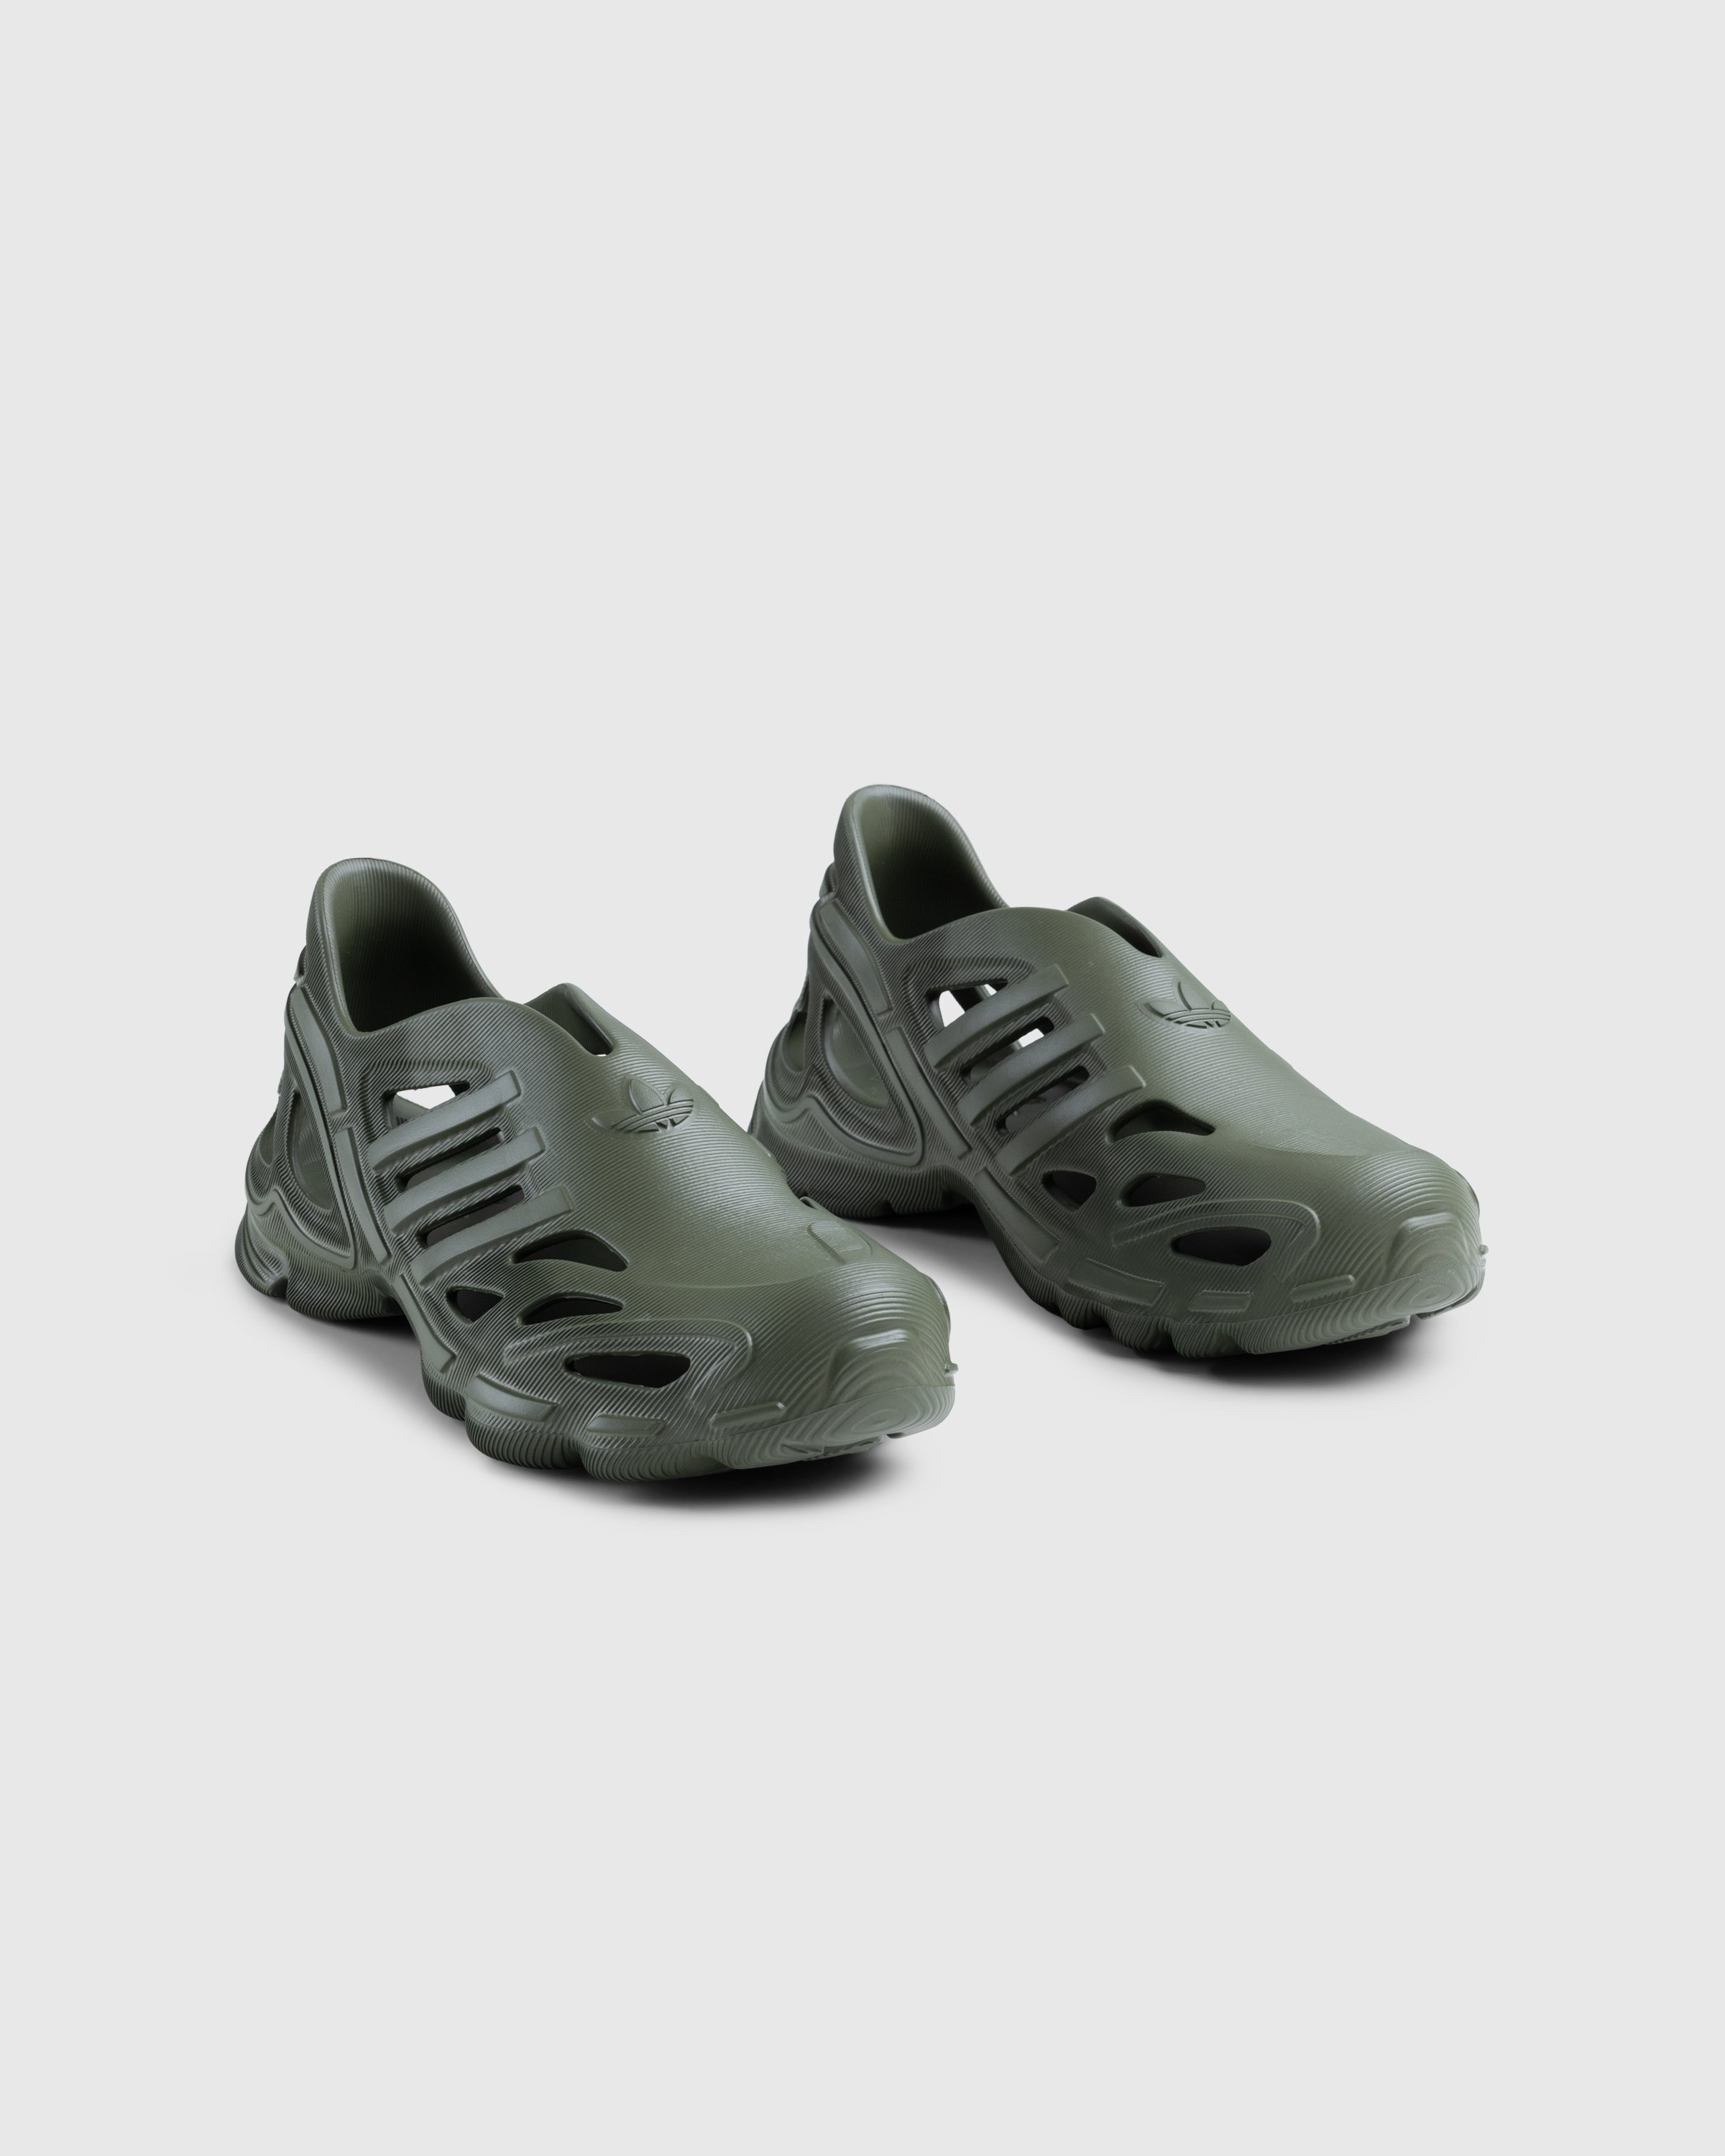 Adidas - Adifom Supernova Focus Olive - Footwear - Green - Image 3